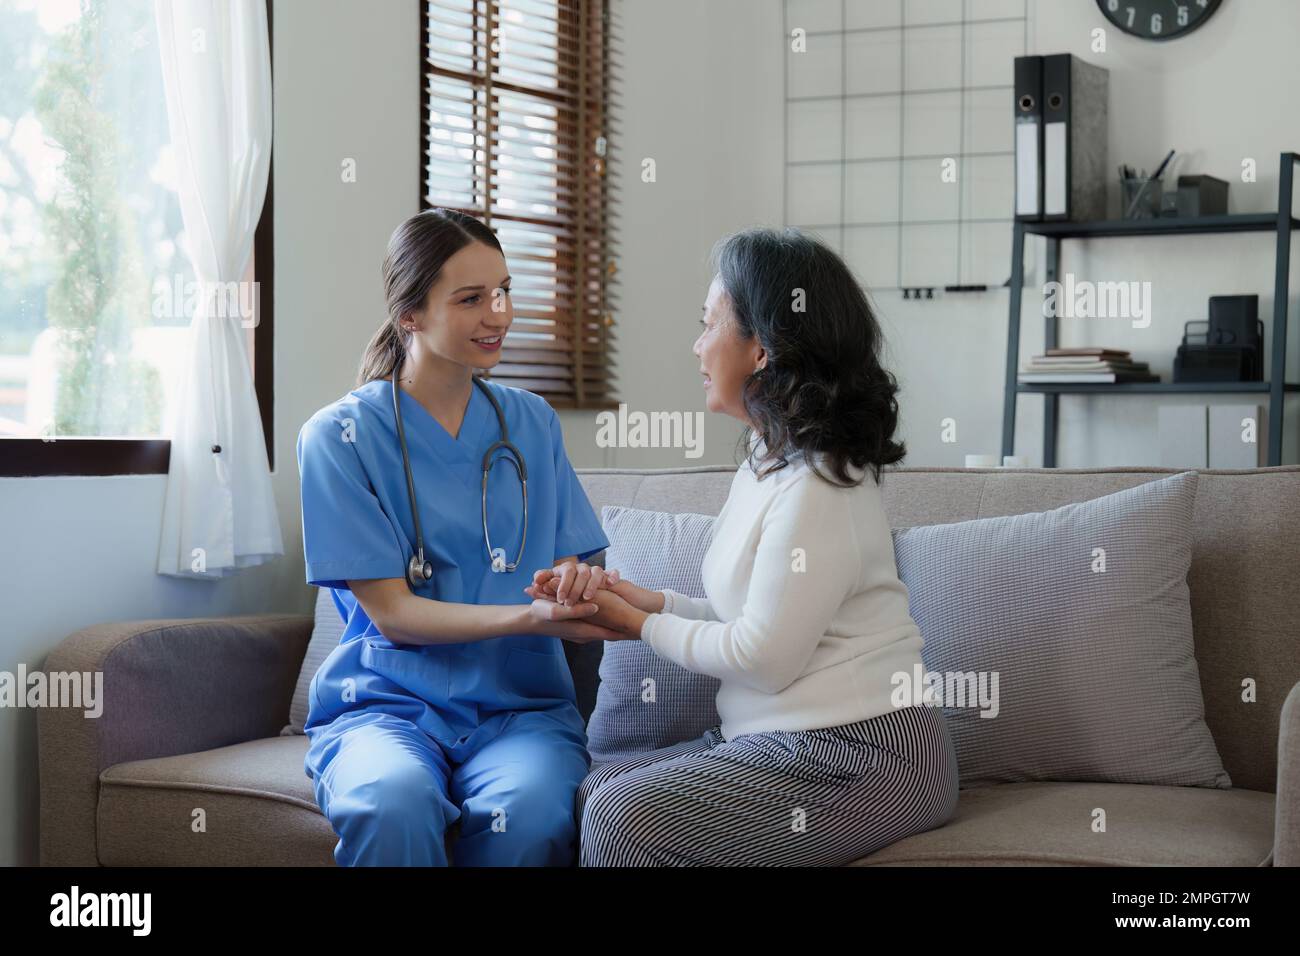 Infirmière de soins à domicile, physiothérapie avec une femme adulte senior à la maison Banque D'Images